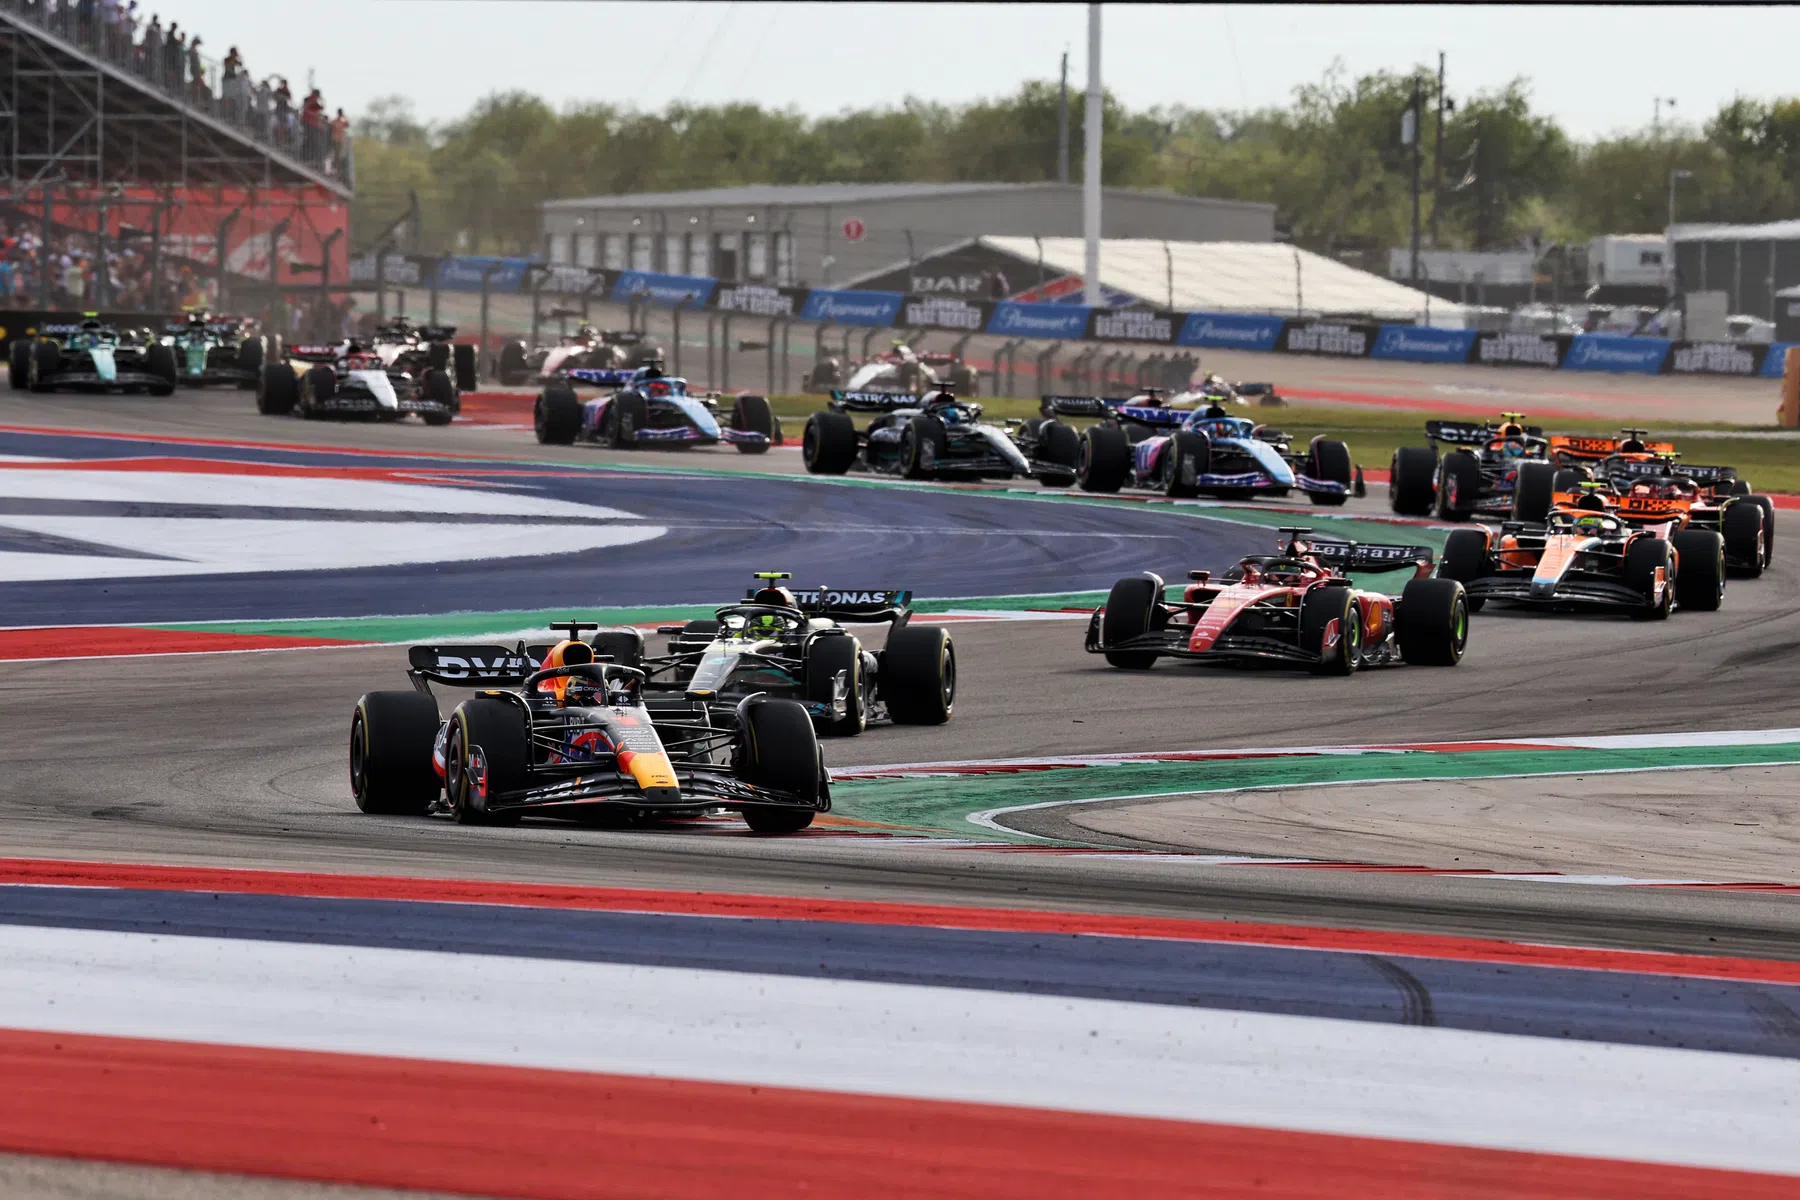 Grid invertido e campeonato à parte: F1 avalia mudança drástica no Sprint